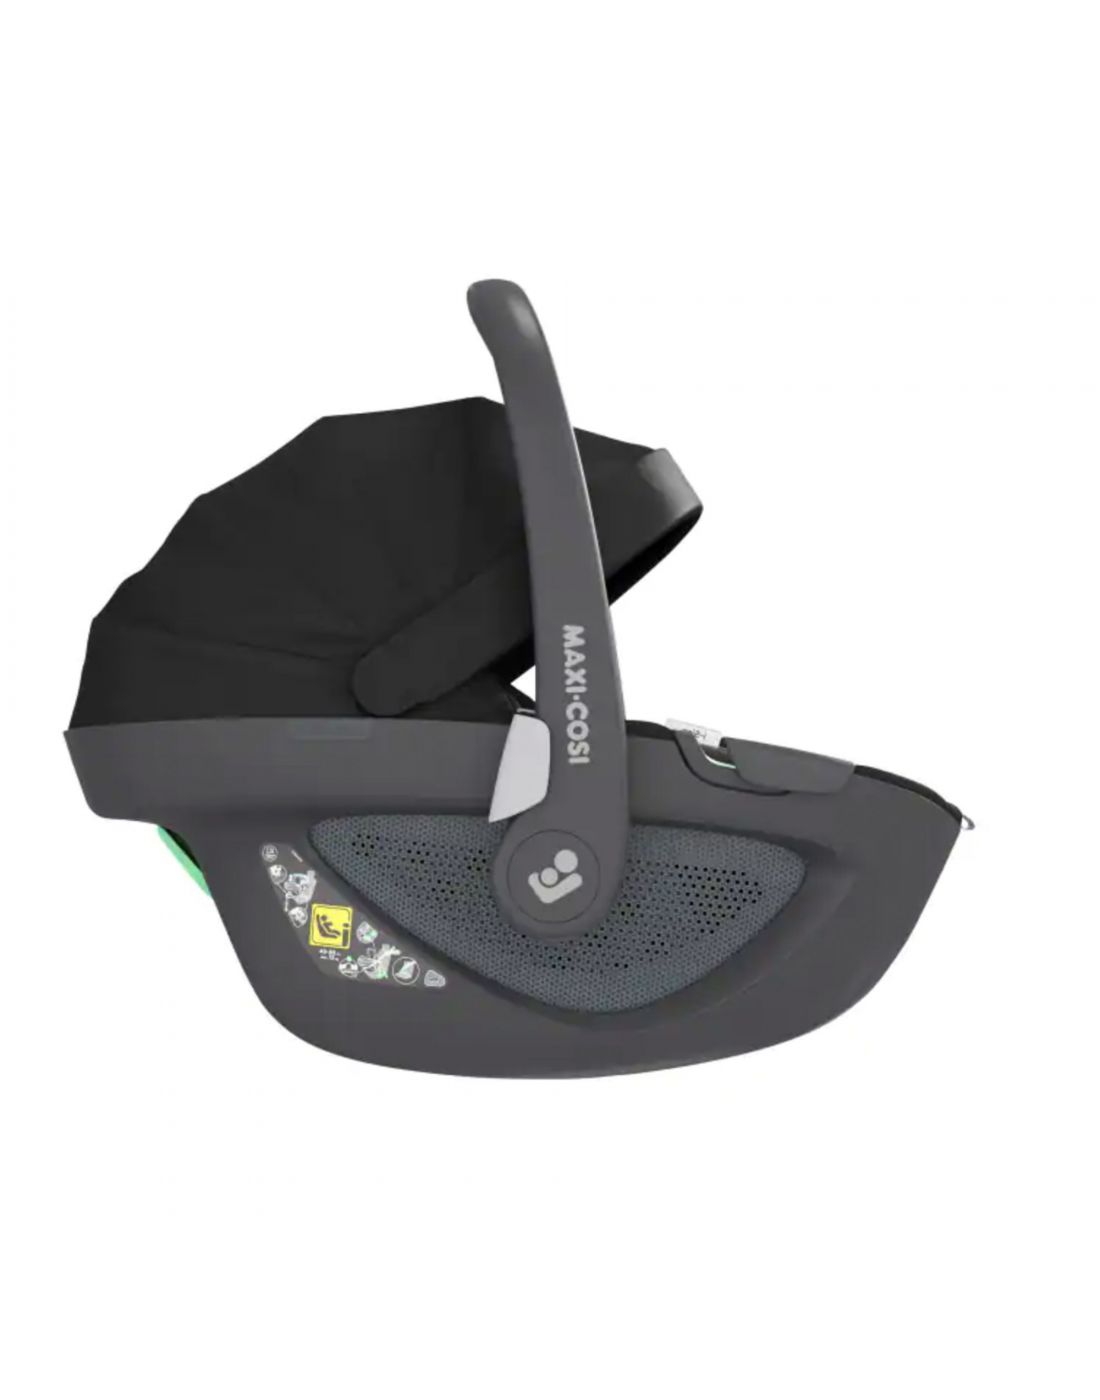 Παιδικό Κάθισμα Αυτοκινήτου Maxi Cosi Pebble 360 Authentic Black